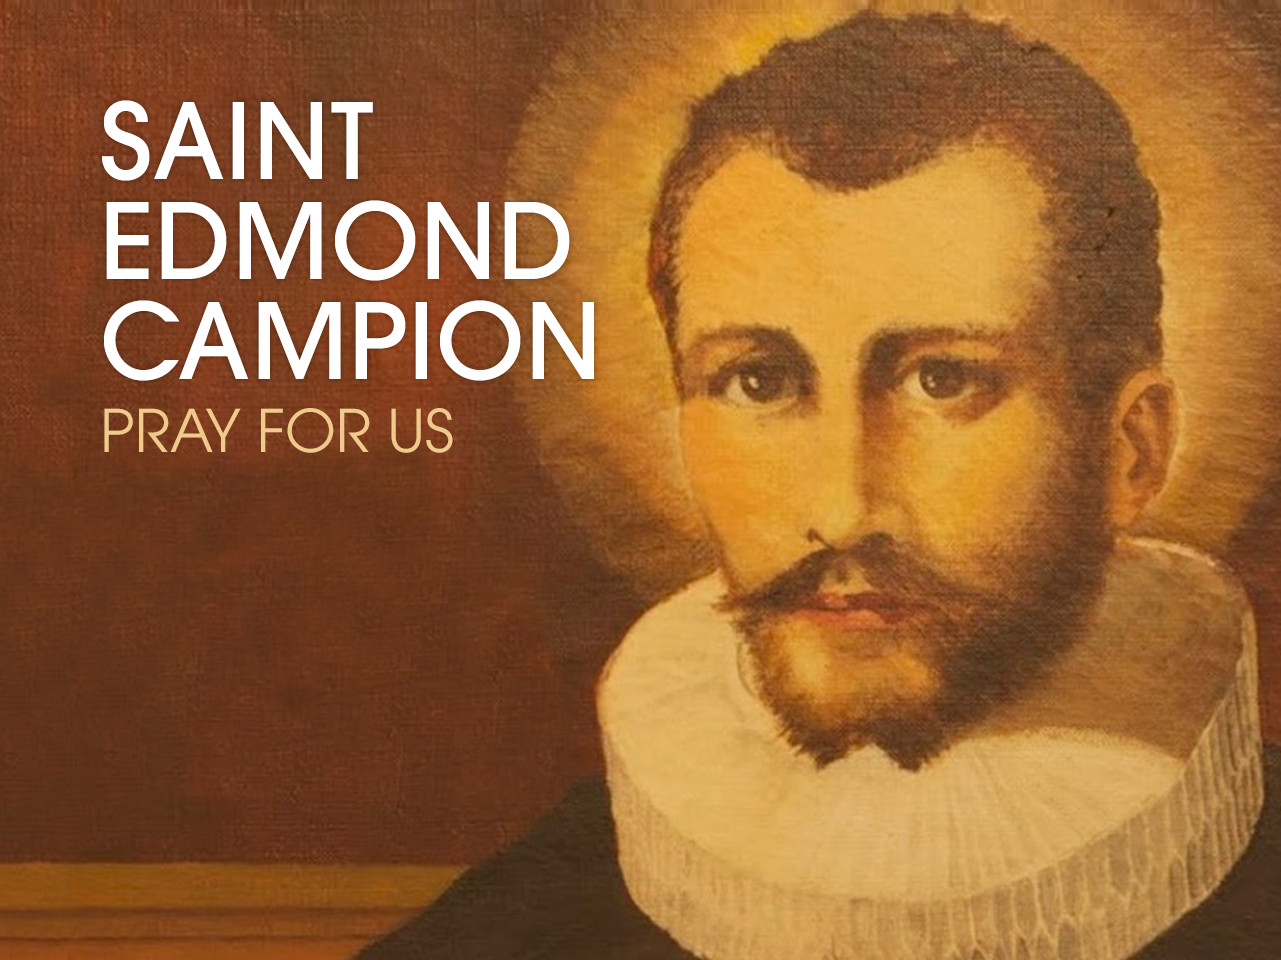 St. Edmund Campion